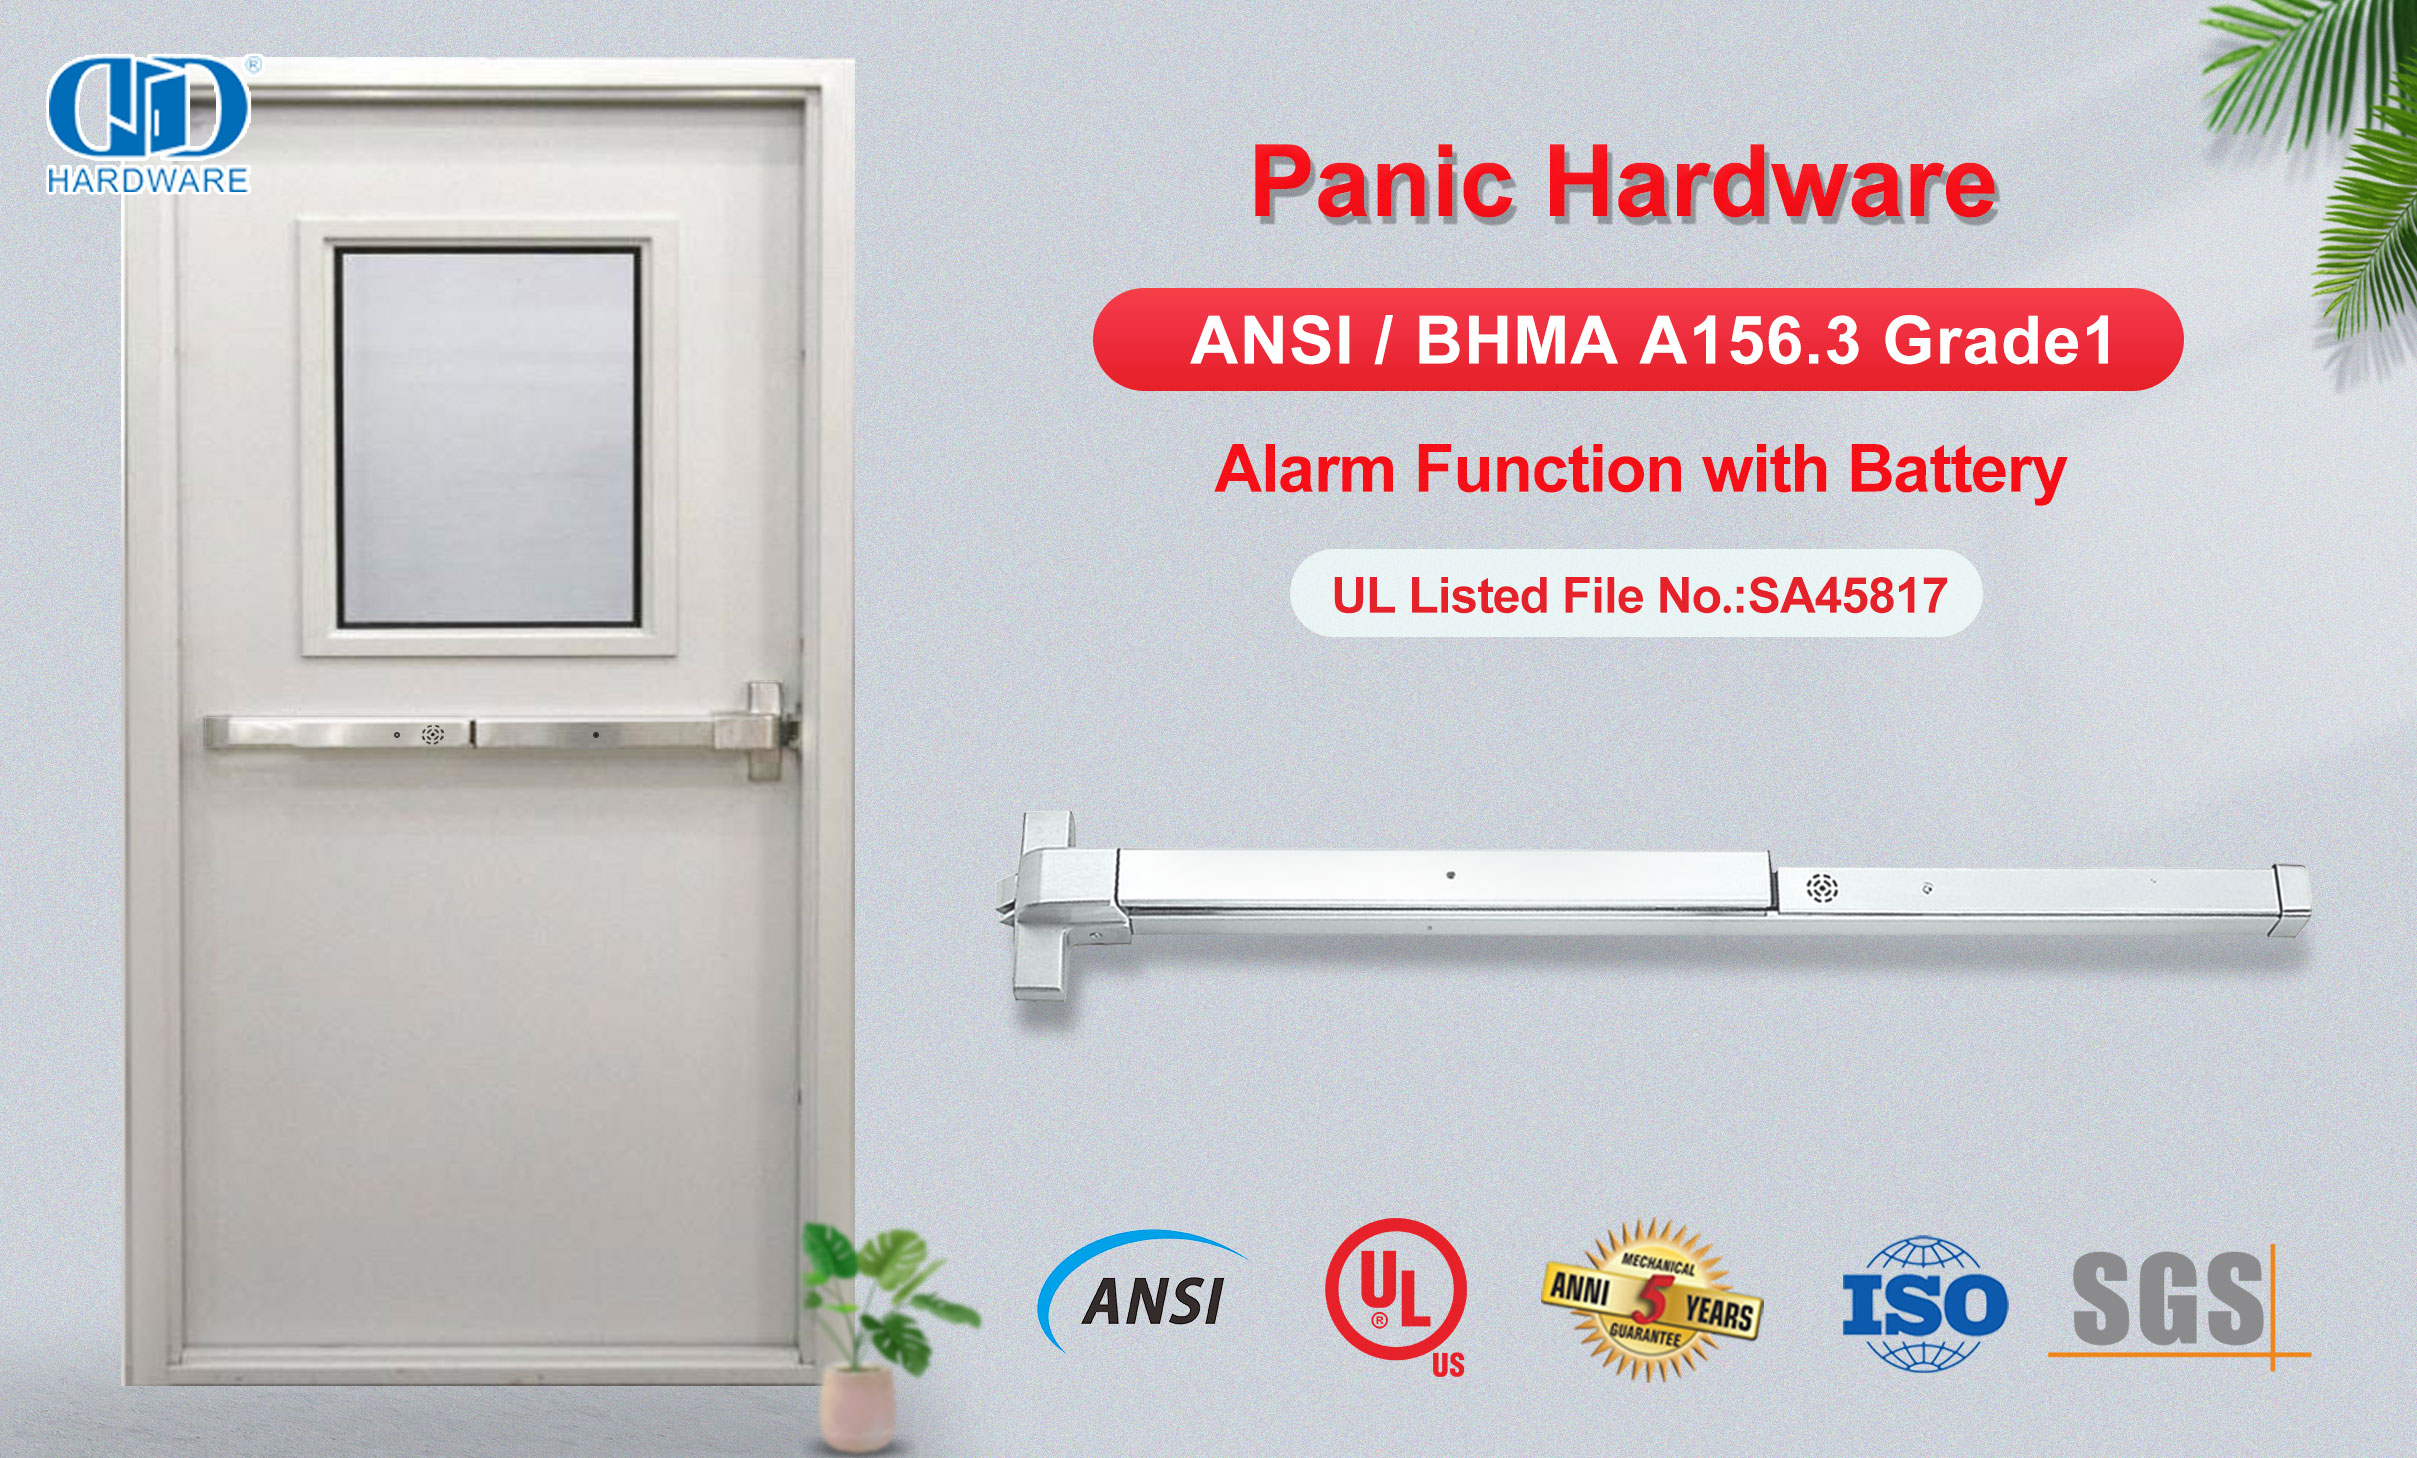 Dispositivo de hardware de pânico com função de alarme de segurança UL305